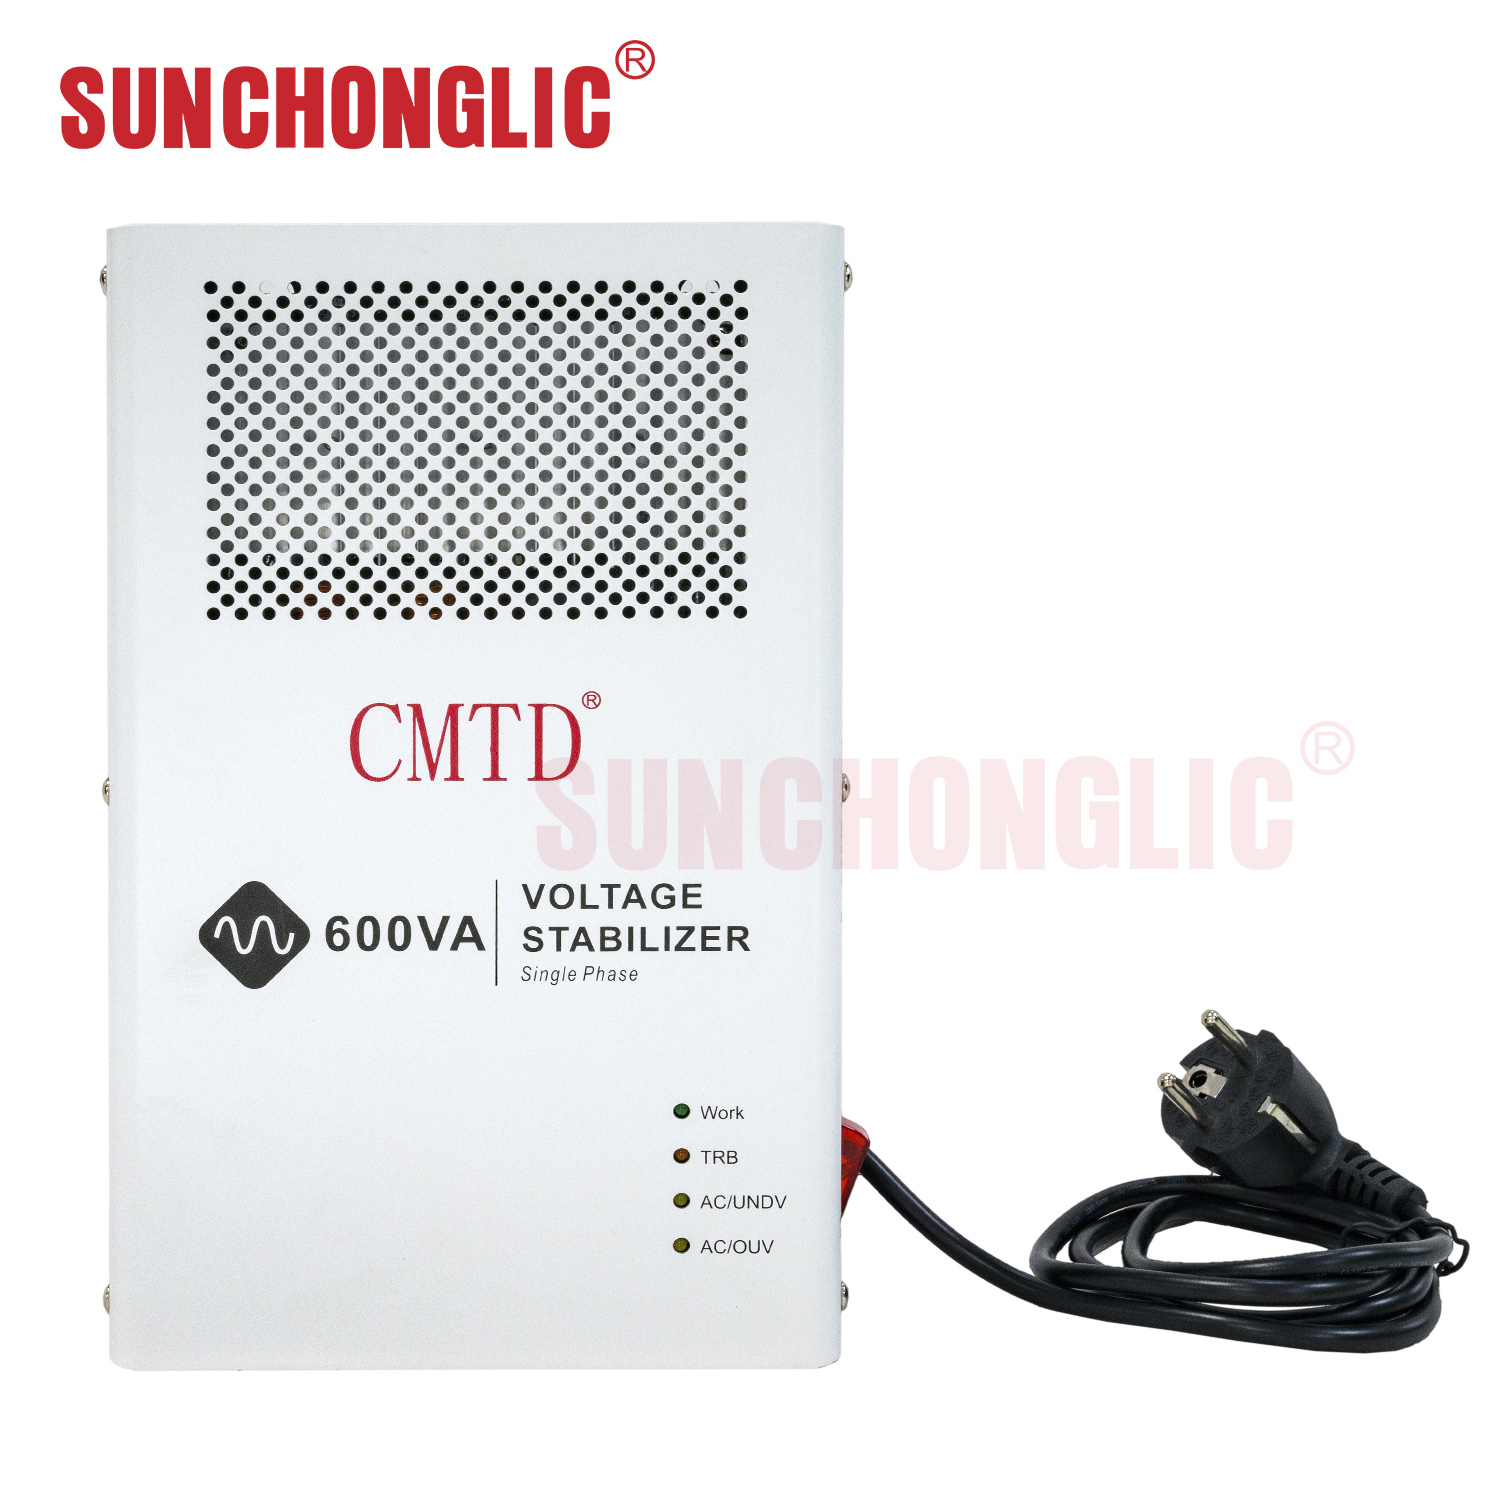 Sunchonglic 600VA 220V AC single phase stabilizer voltage